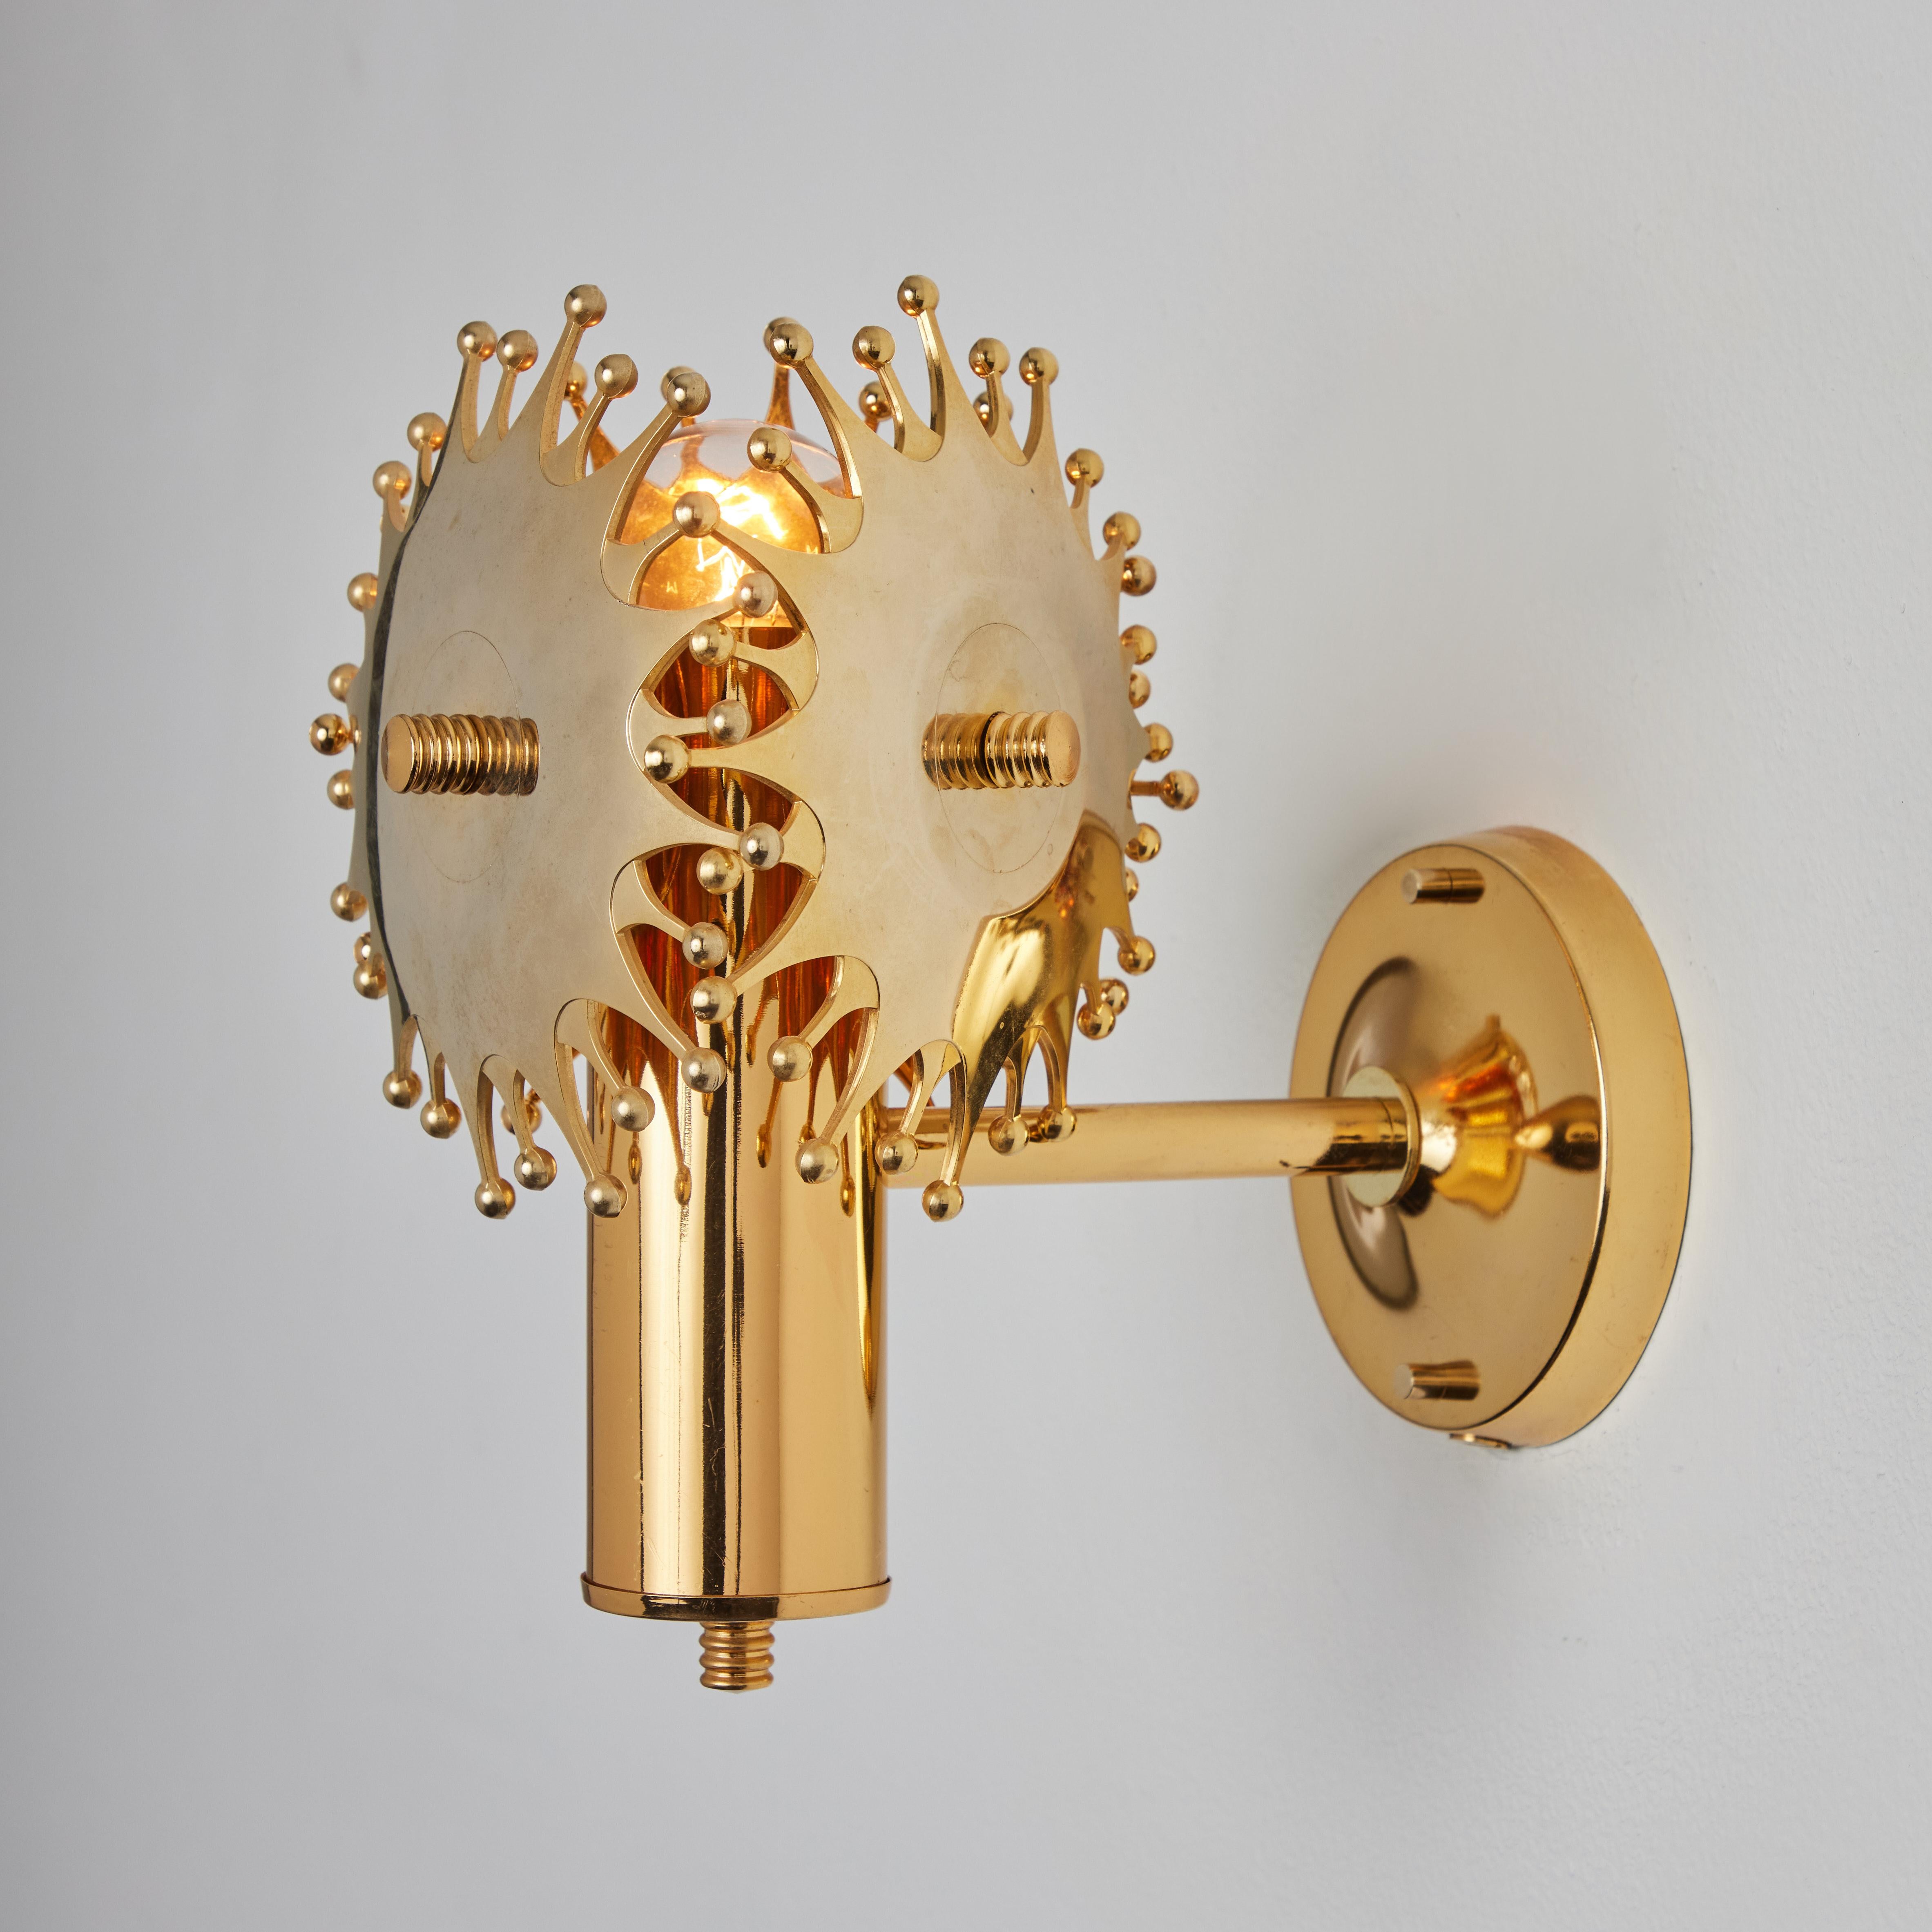 Scandinavian Modern Pair of 1960s Sculptural Brass Wall Lamps by Armatur Hantverk Tibro, Sweden For Sale